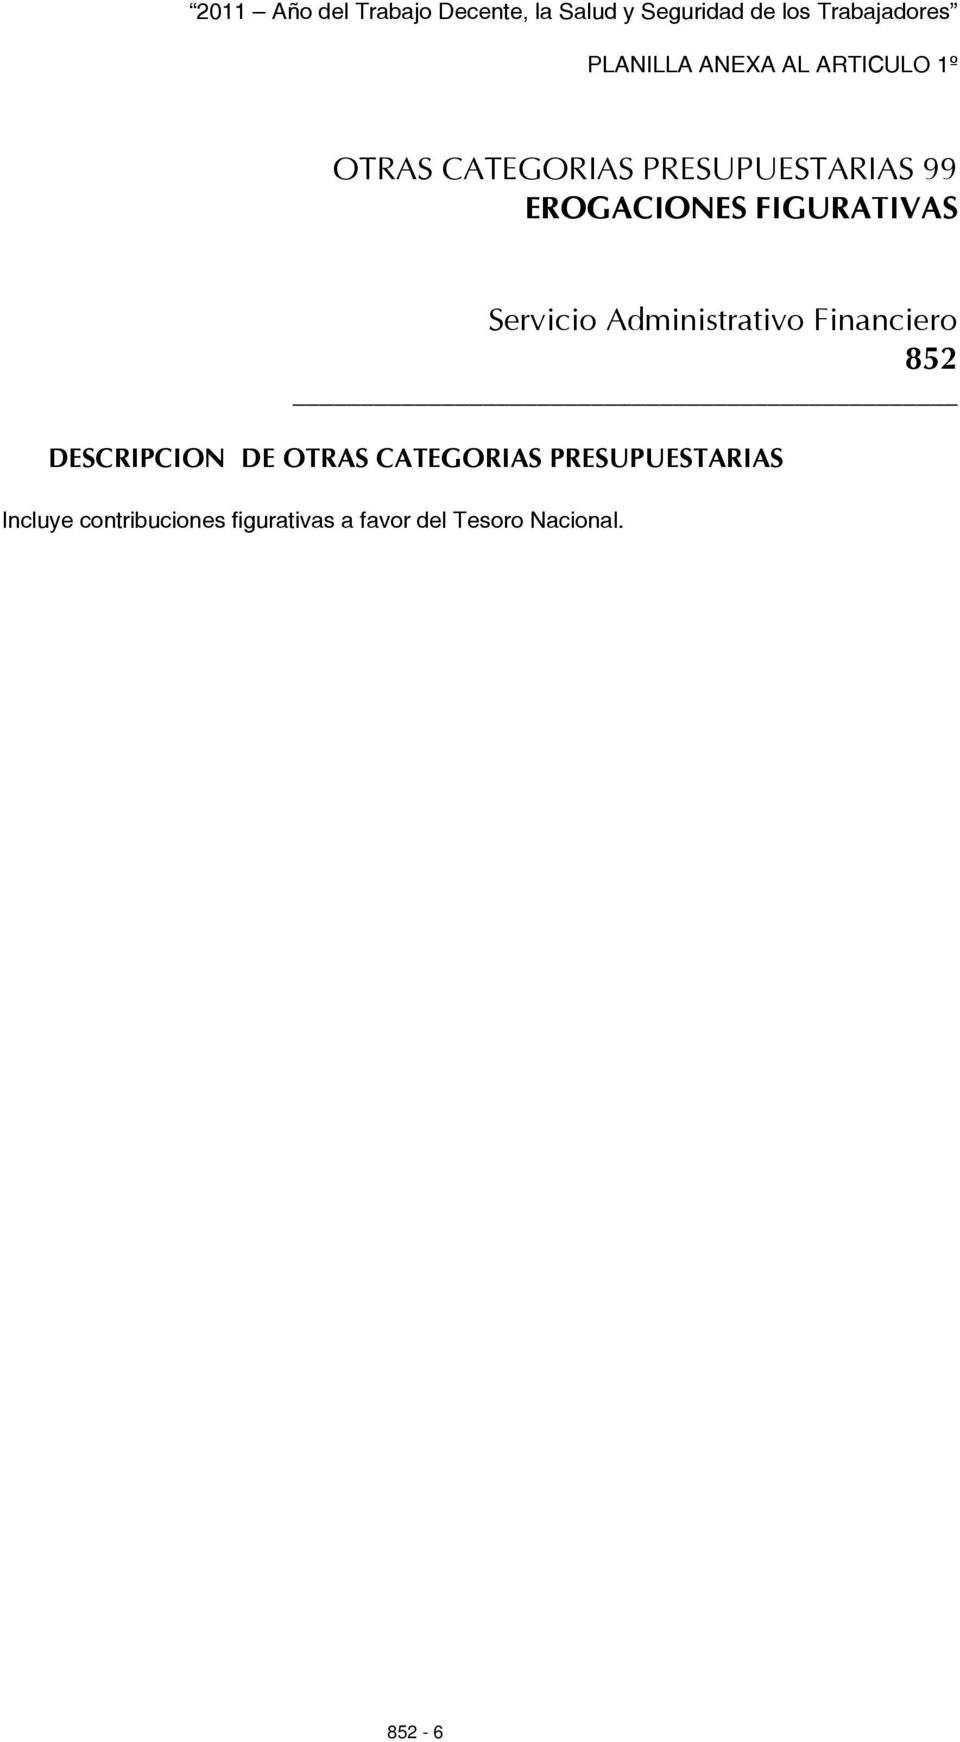 DESCRIPCION DE OTRAS CATEGORIAS PRESUPUESTARIAS